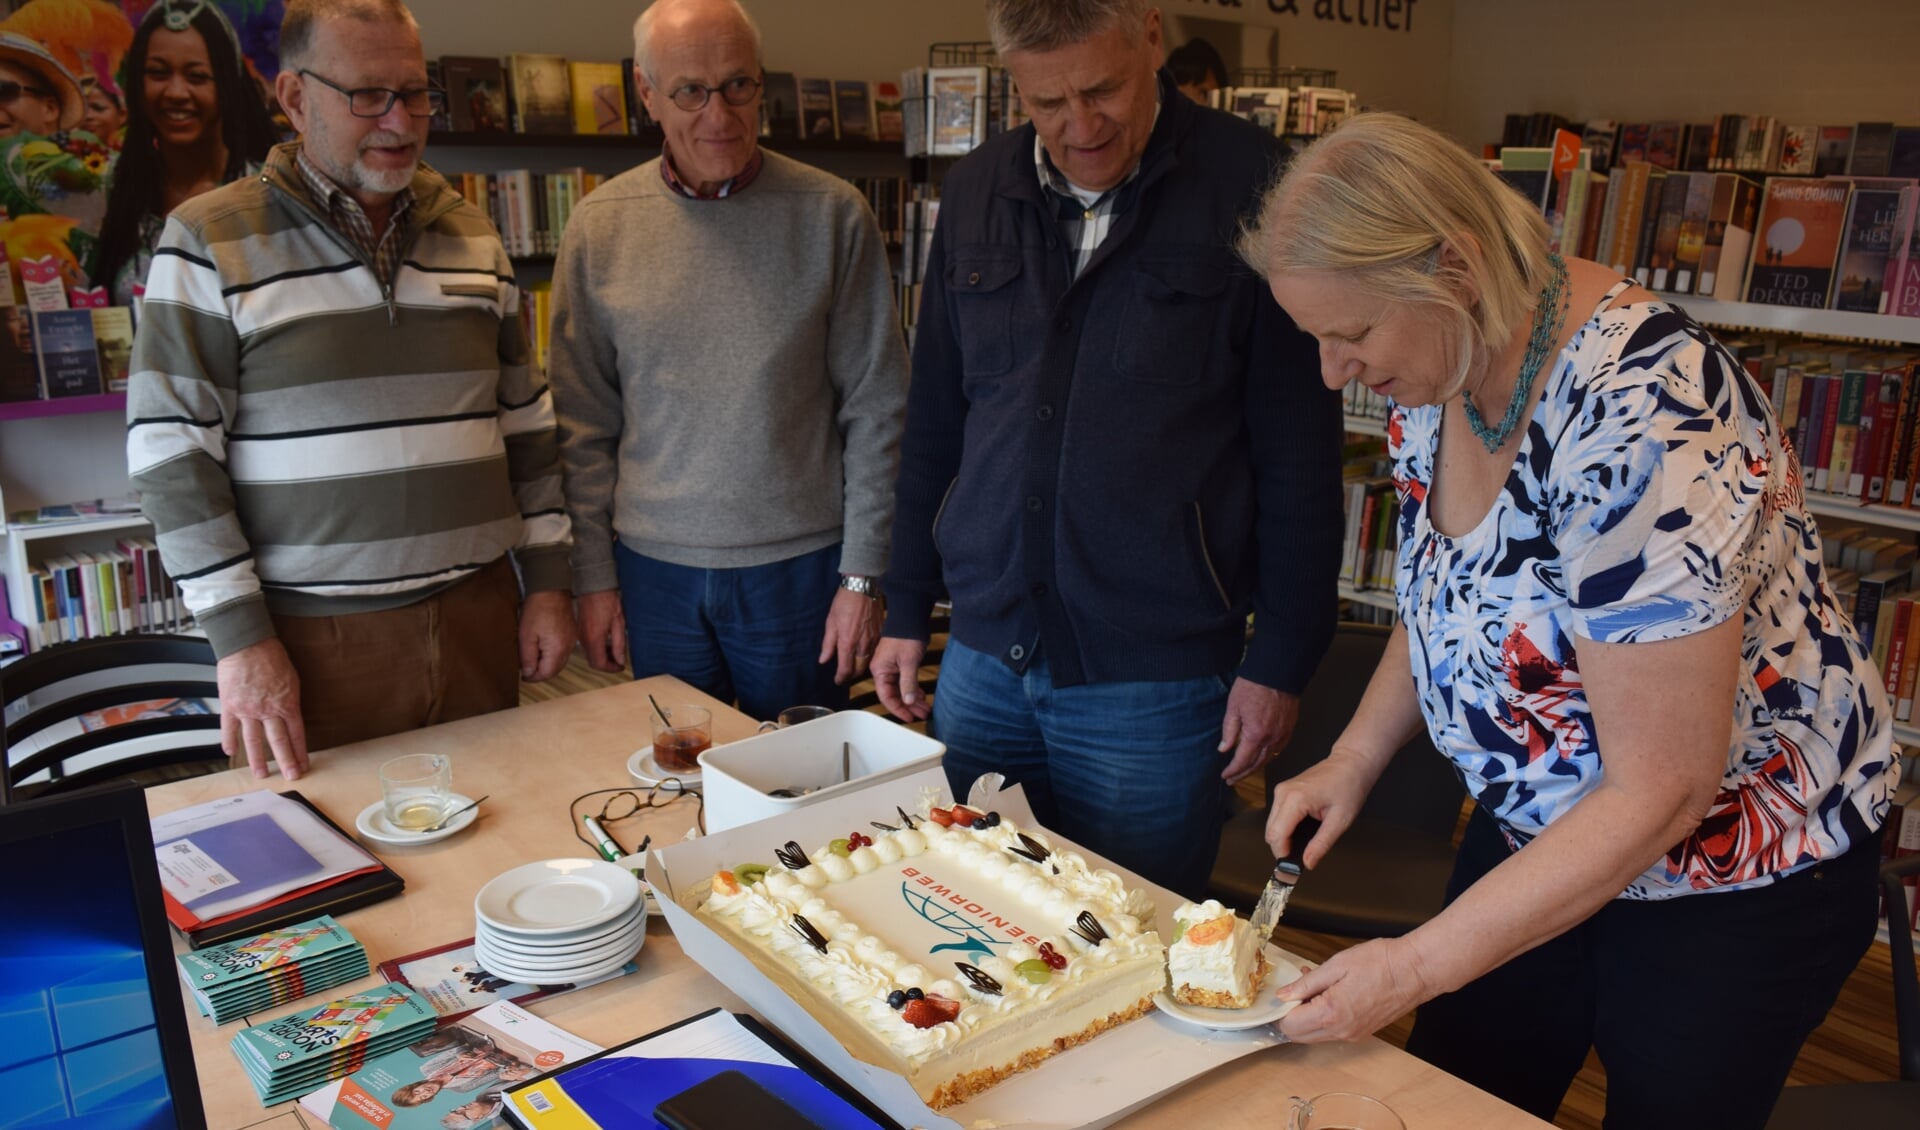 De taart wordt aangesneden door Carla Heerschop voor v.l.n.r. Ton van Doorn, Lout Bracke en Hein Banken.